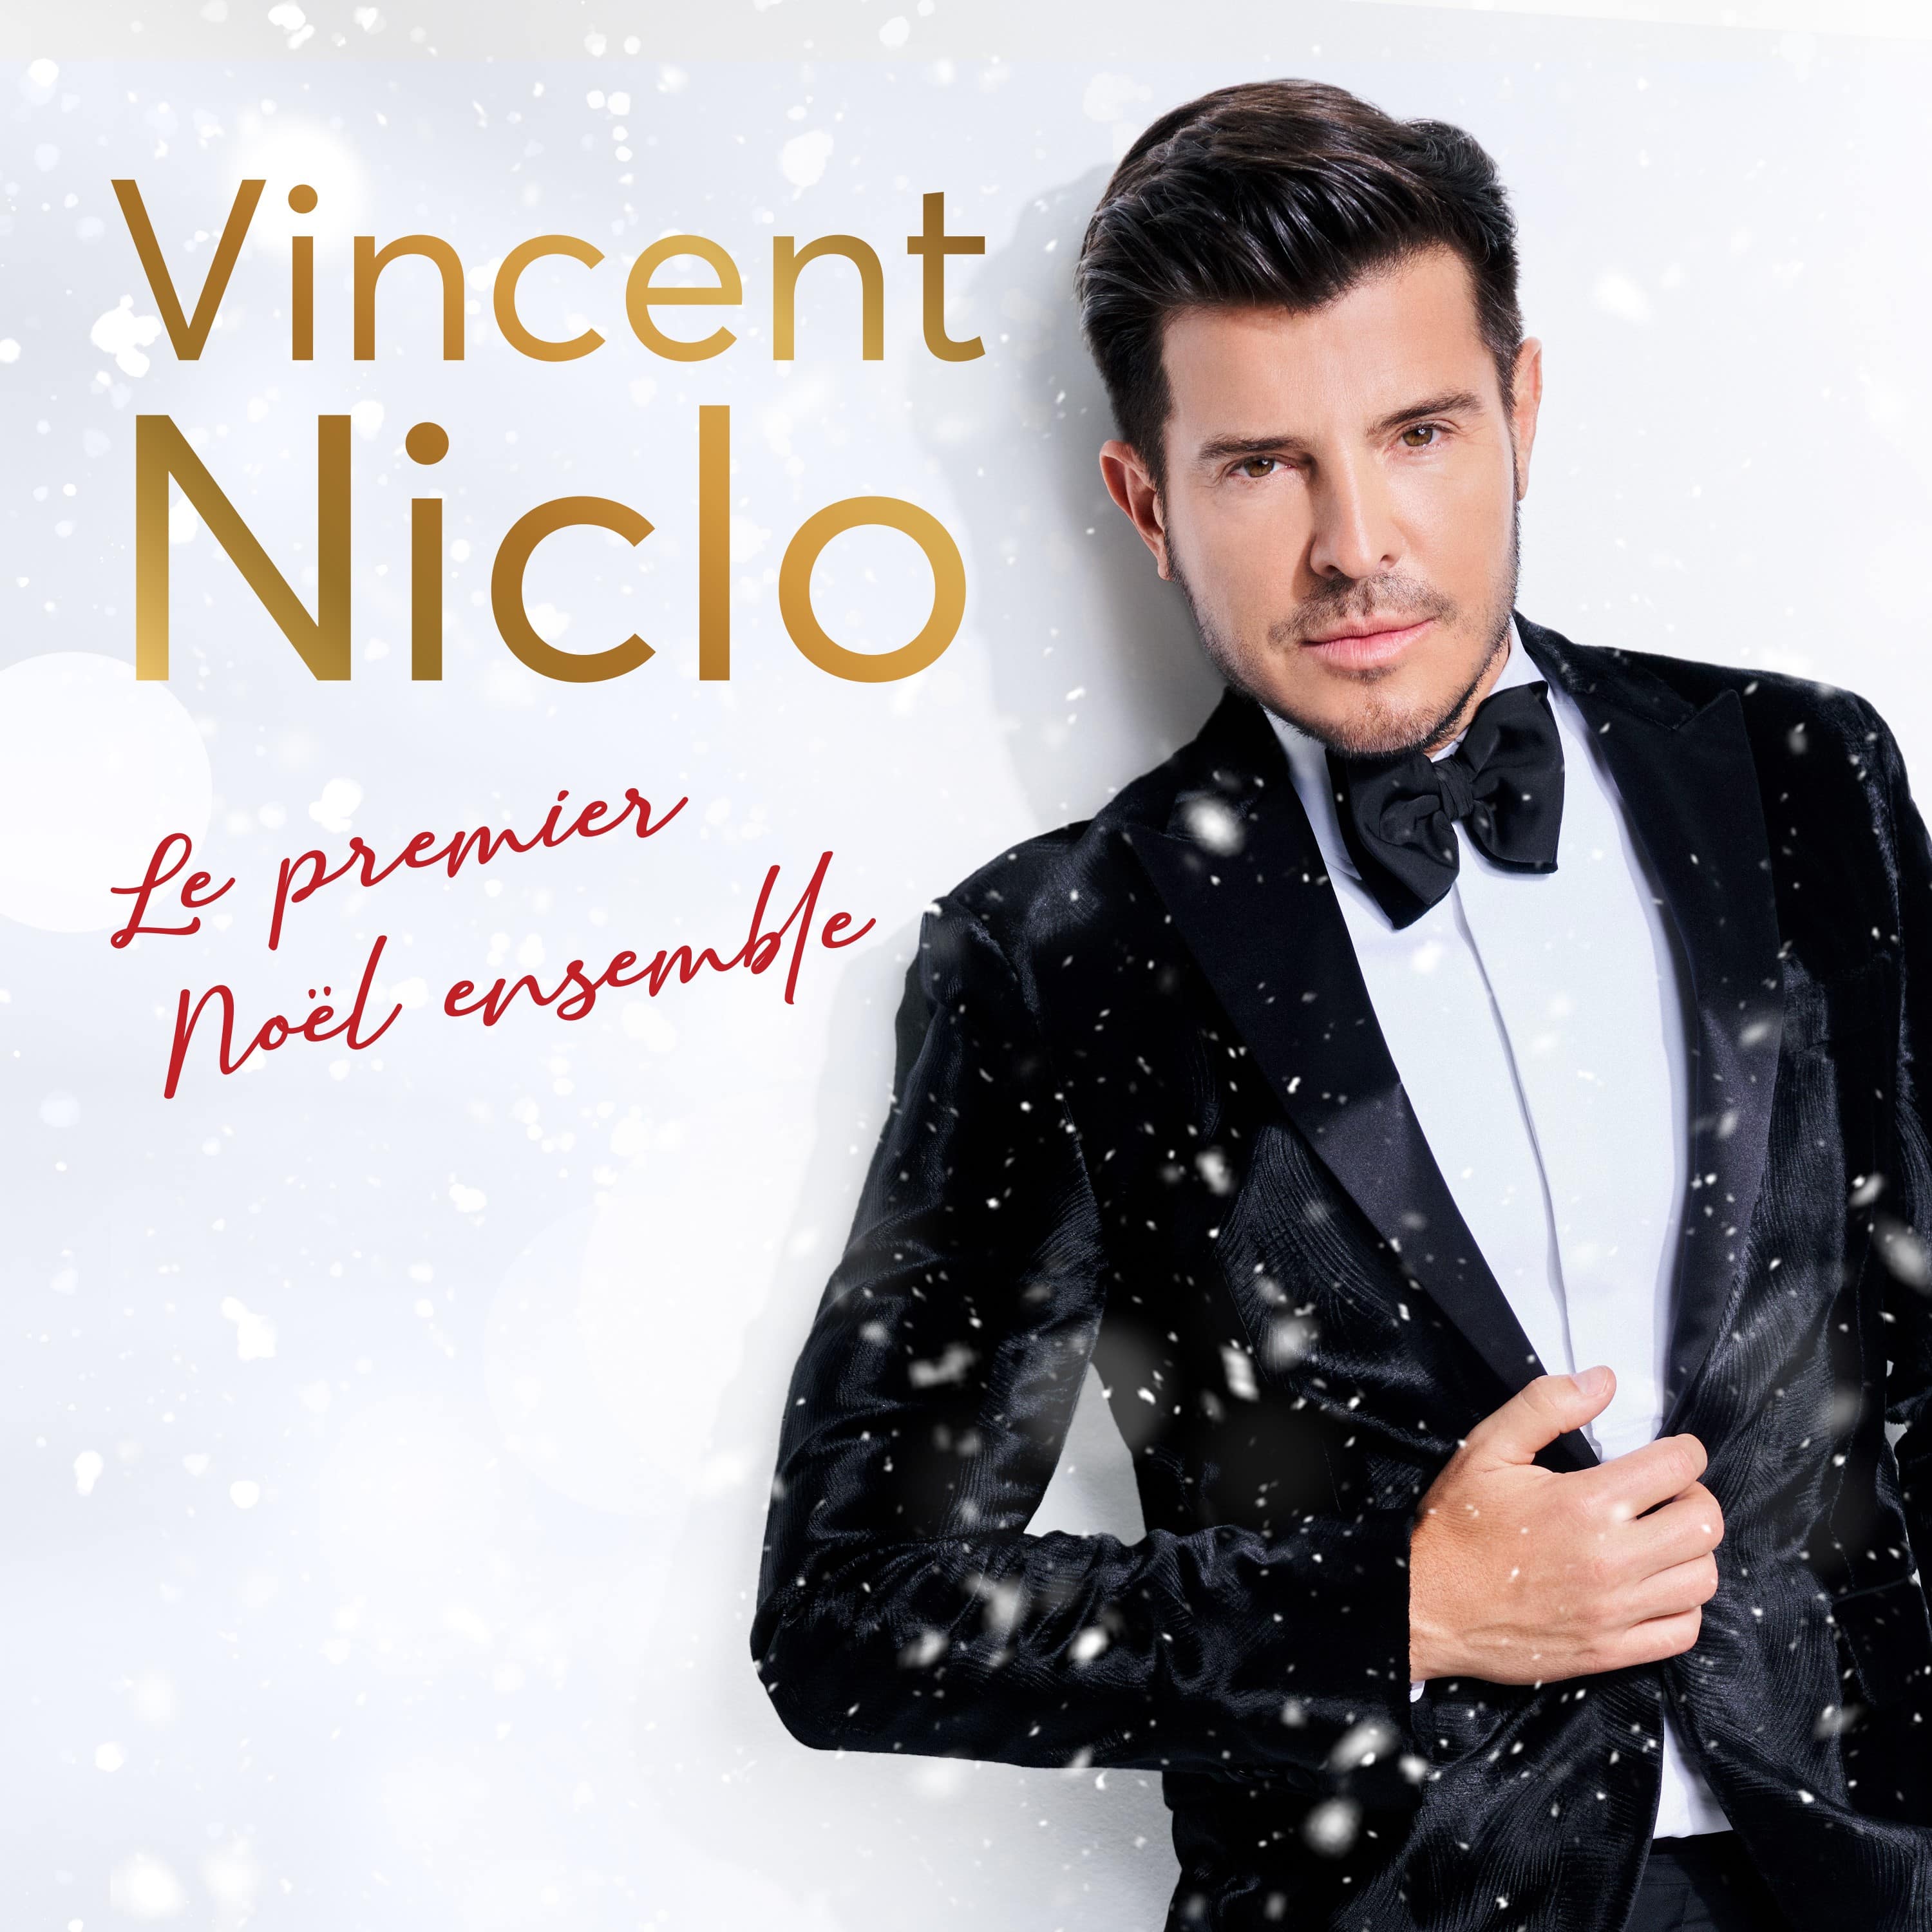 Le premier Noël ensemble Vincent Niclo